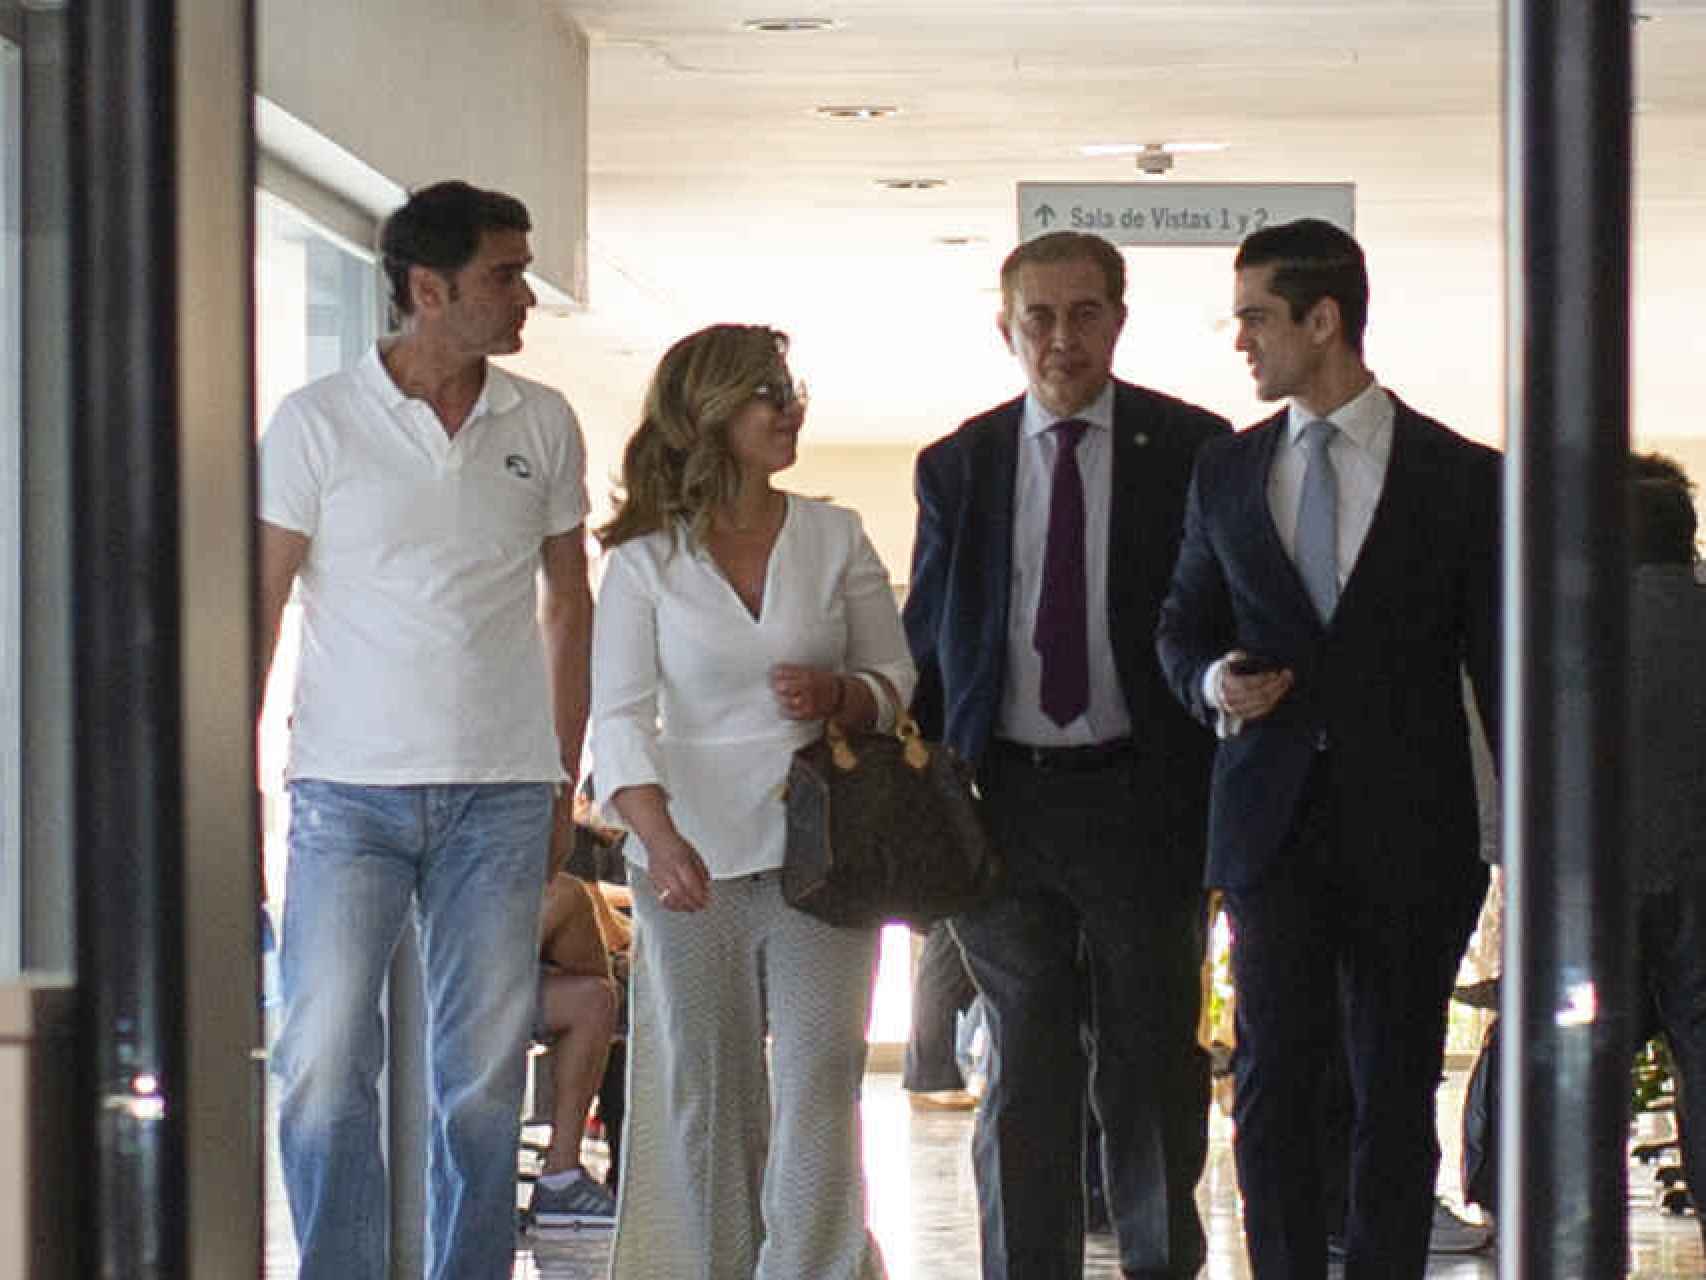 Jesulín de Ubrique, María José Campanario y su equipo de abogados abandonado los juzgados de Arcos de la Frontera.